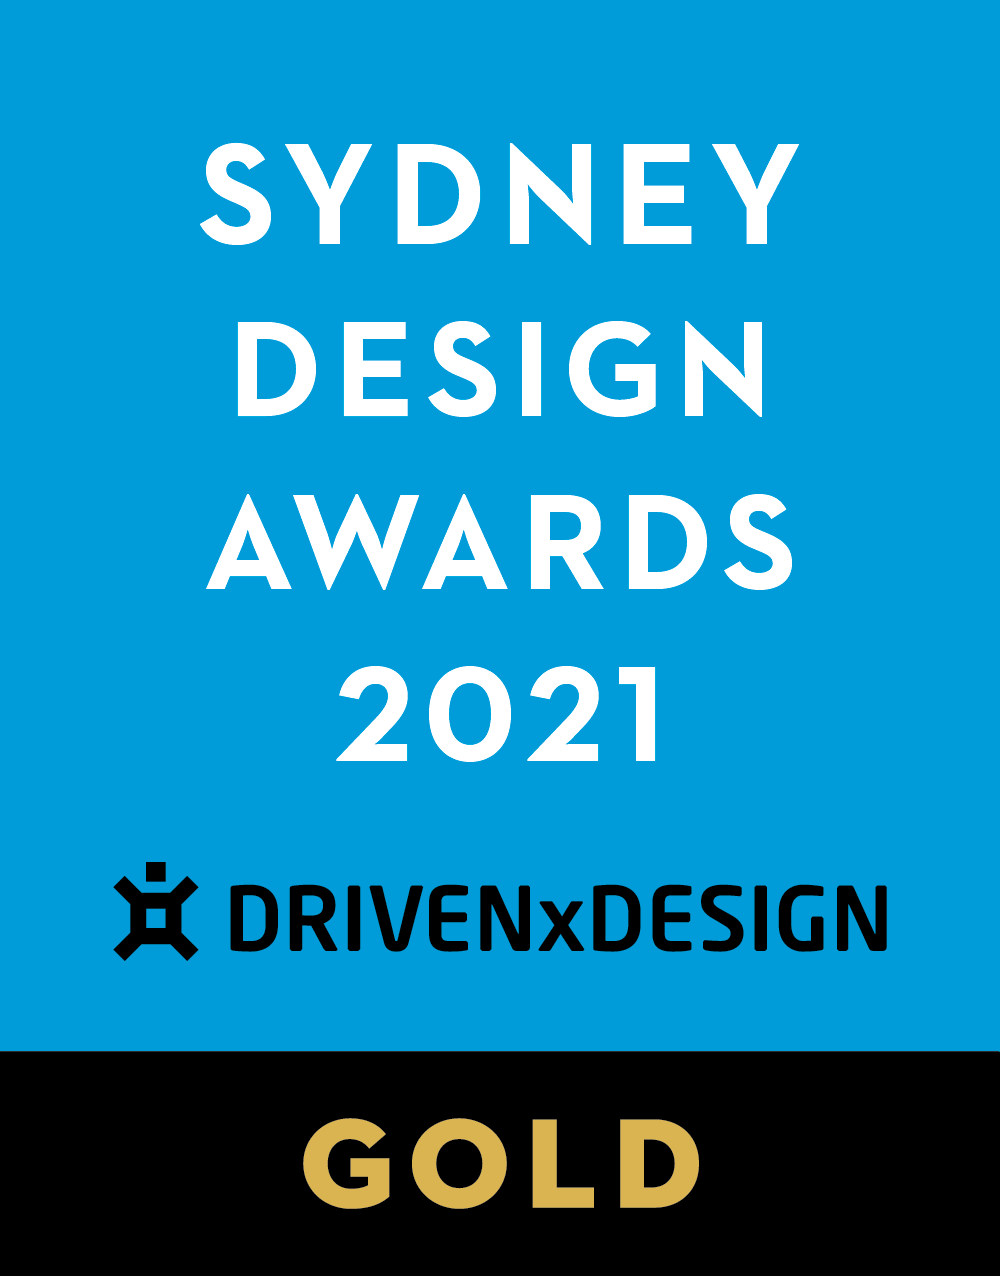 2021 Sydney Design Awards 悉尼设计大奖获奖名单已正式揭晓。设计师周子鉴凭借其作品《归隐于院子》从世界各地海量优秀参赛项目中脱颖而出，斩...